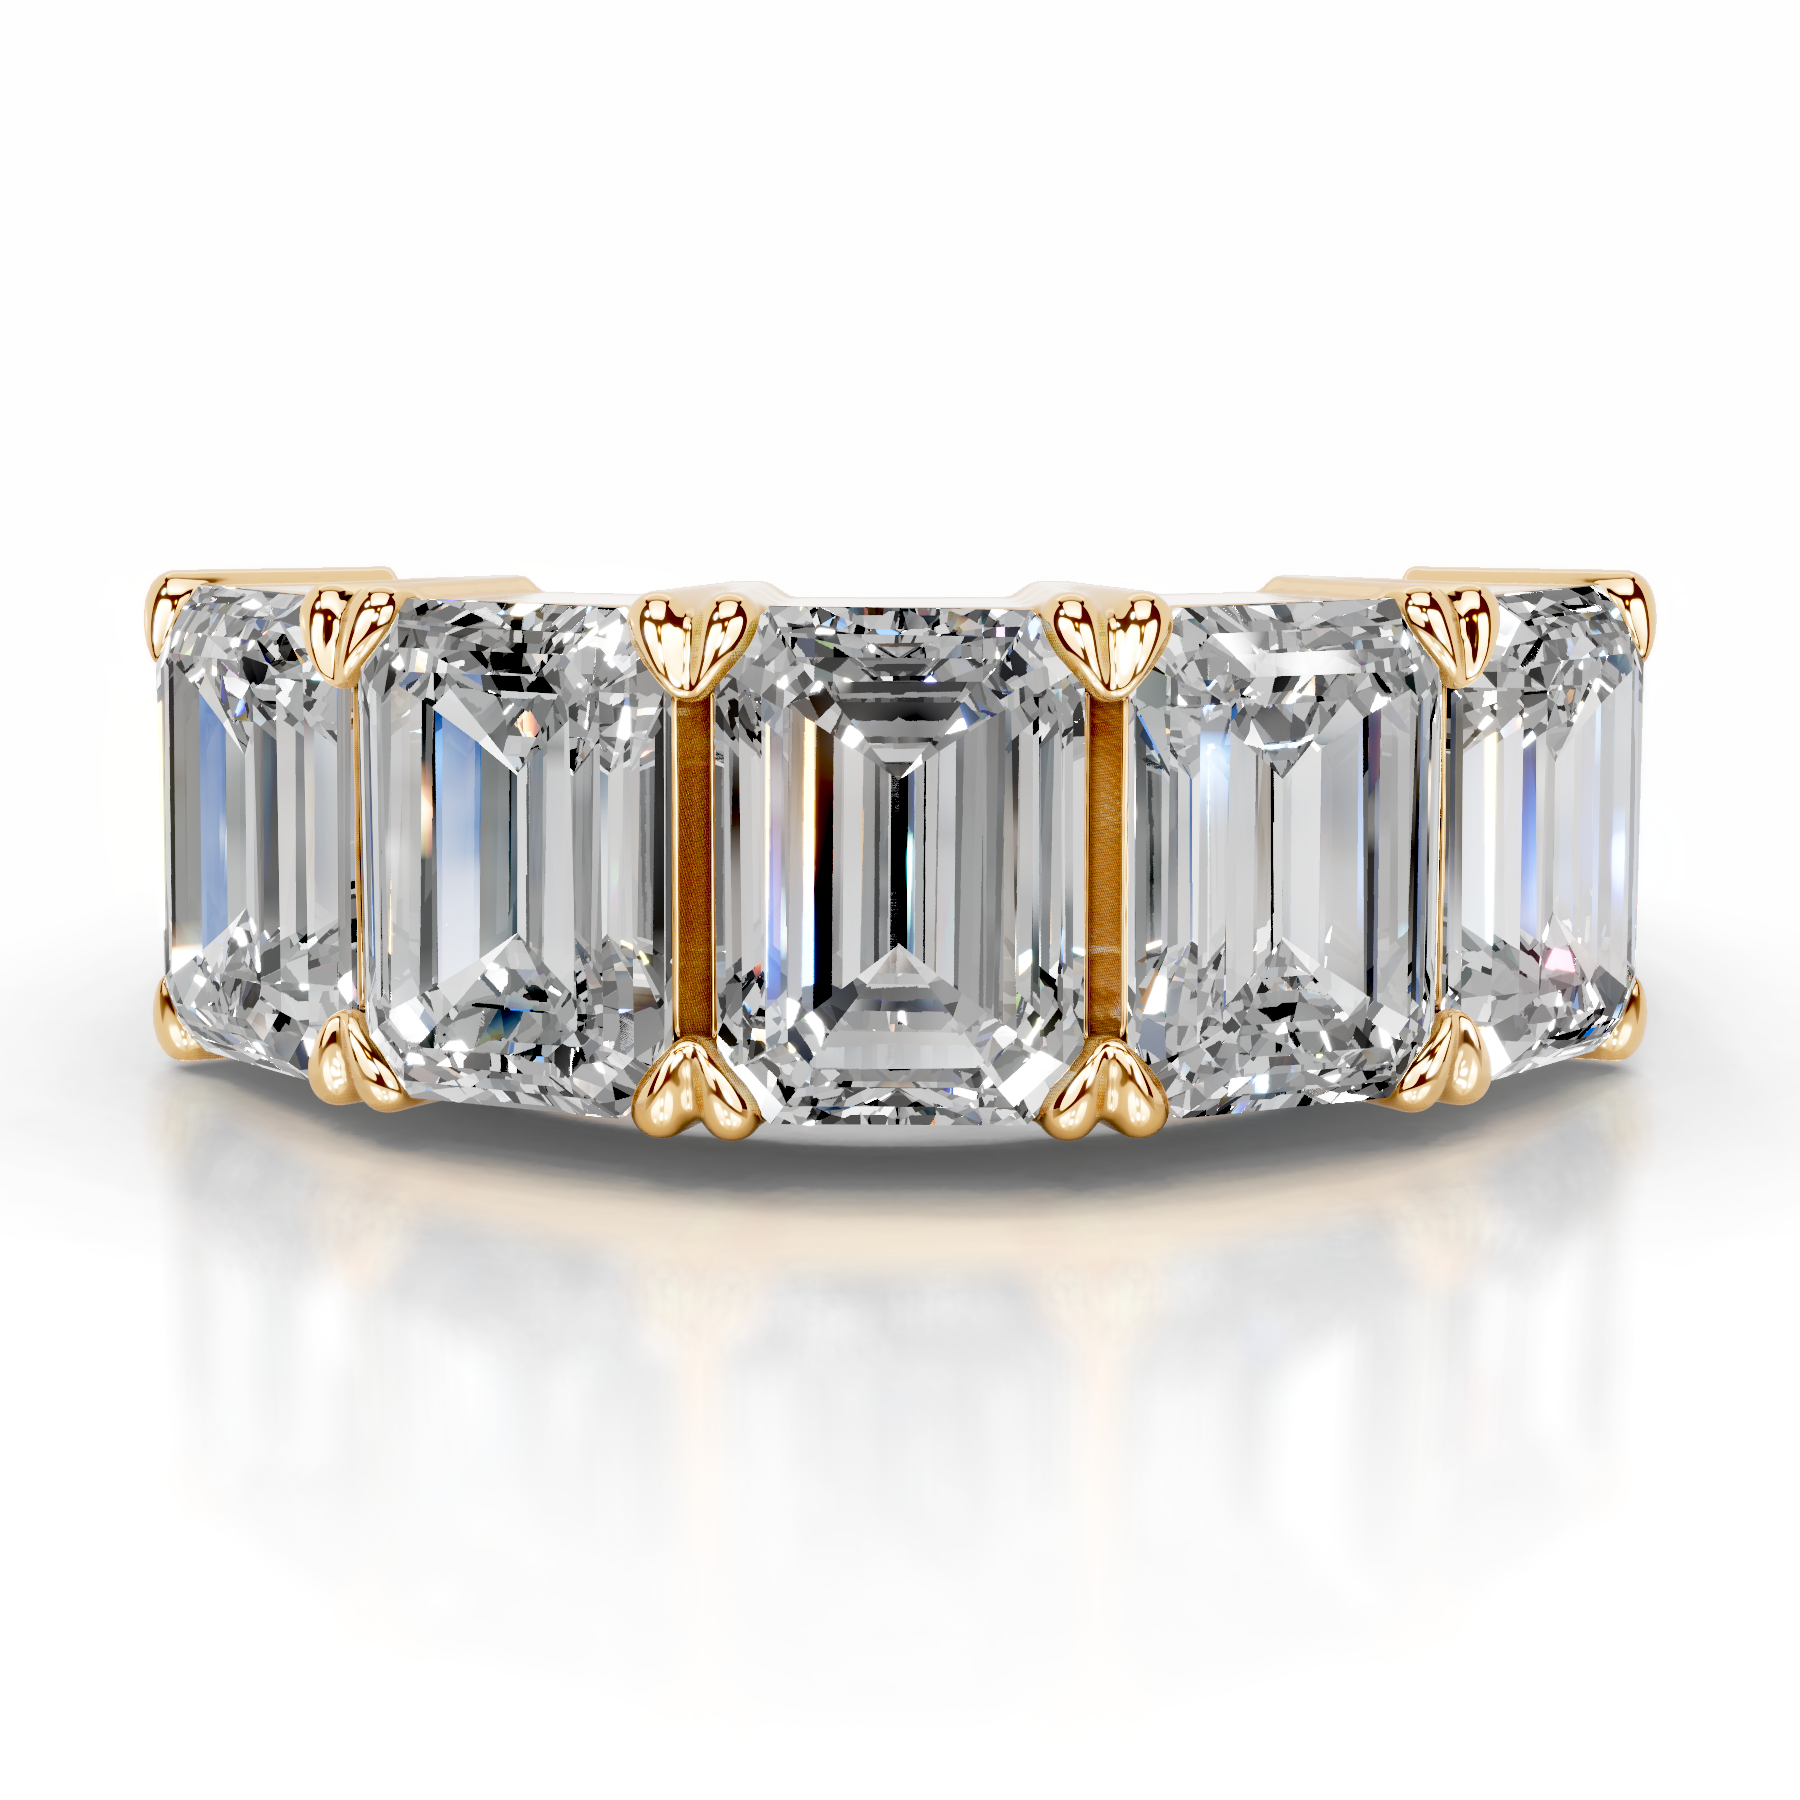 Shandra Diamond Wedding Ring   (2.5 Carat) -18K Yellow Gold